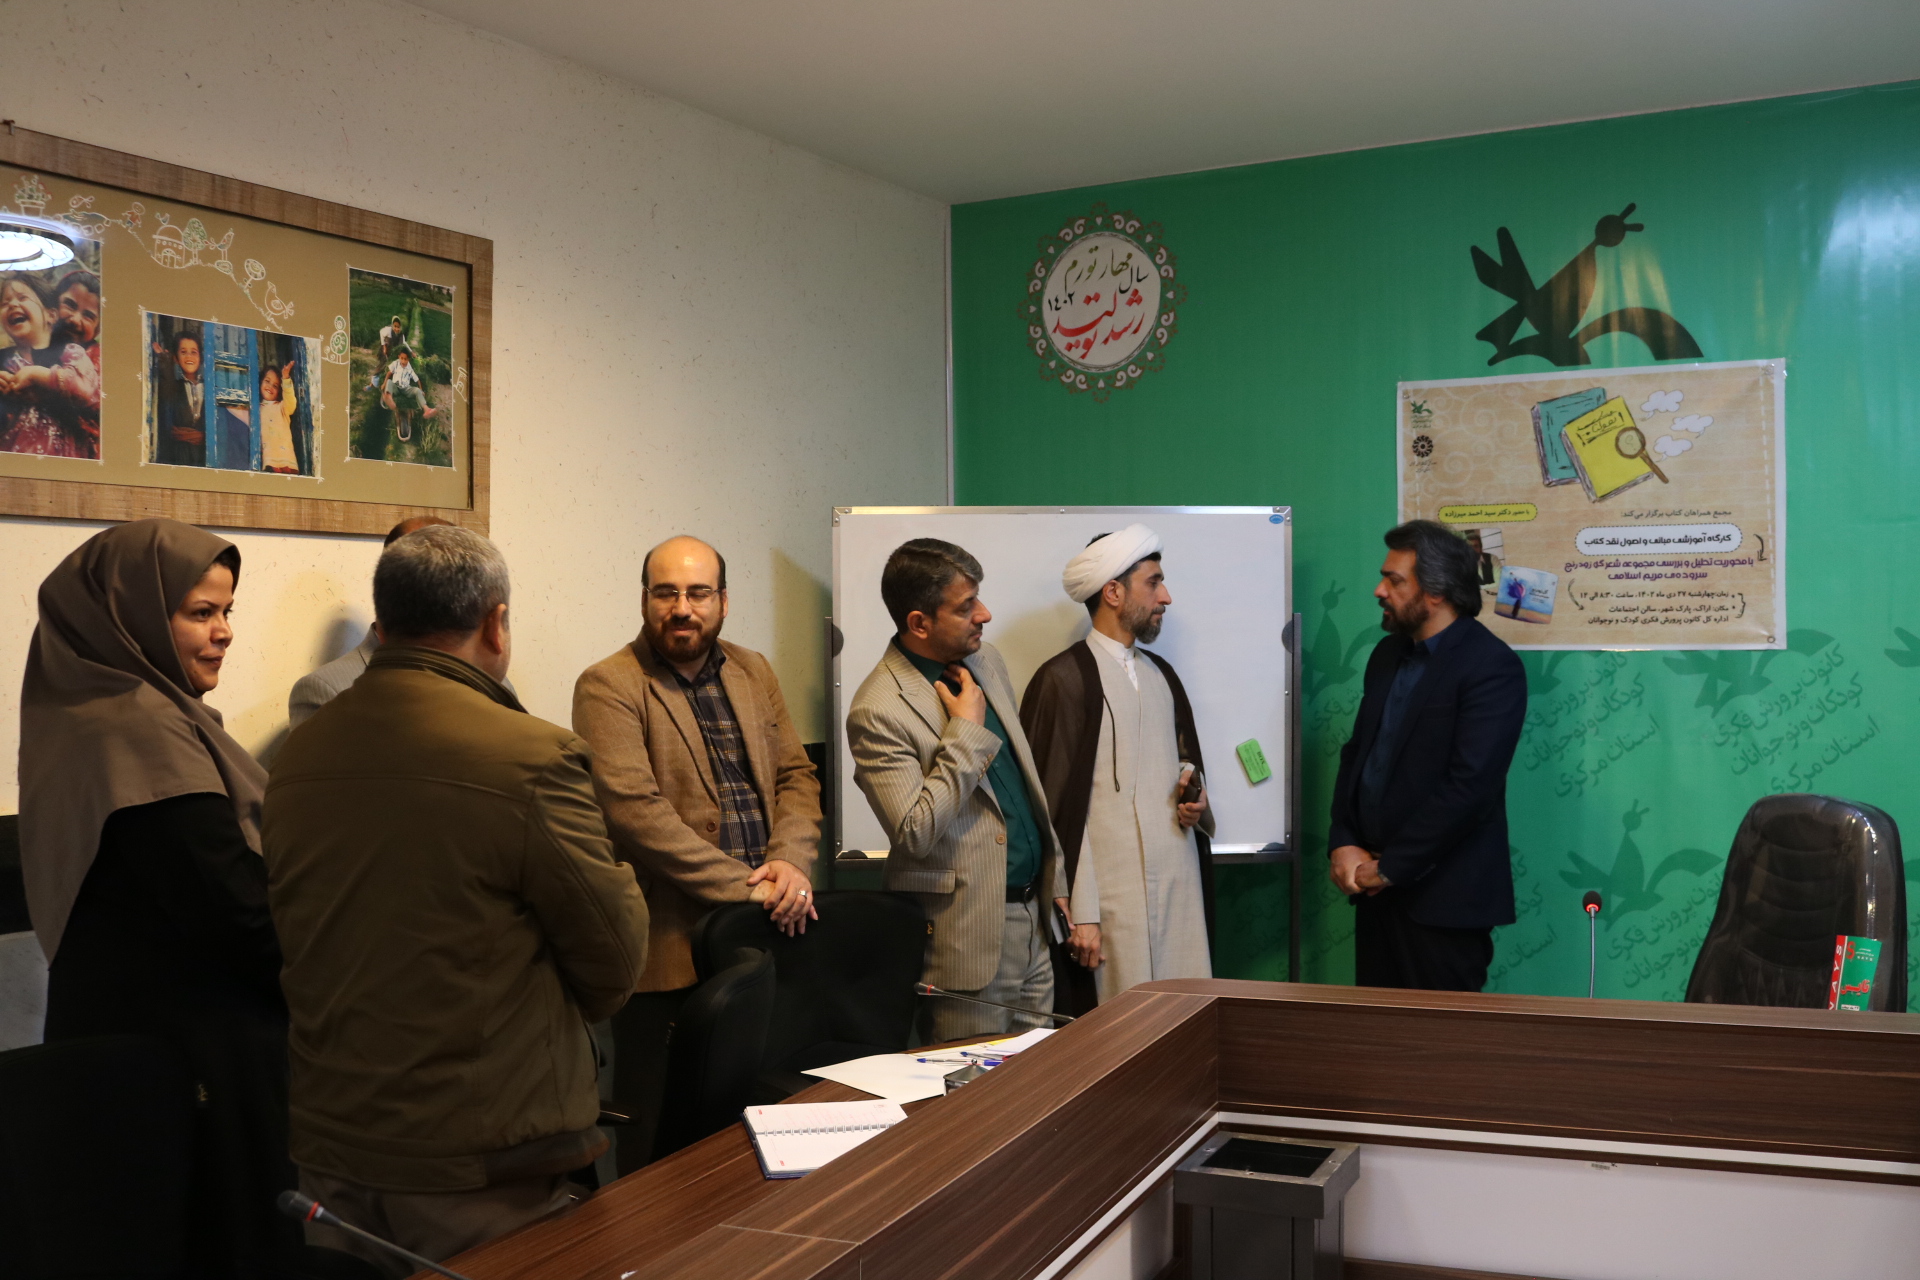 کارگاه آموزشی "آشنایی با اصول و مبانی نقد کتاب" در کانون استان مرکزی برگزار شد